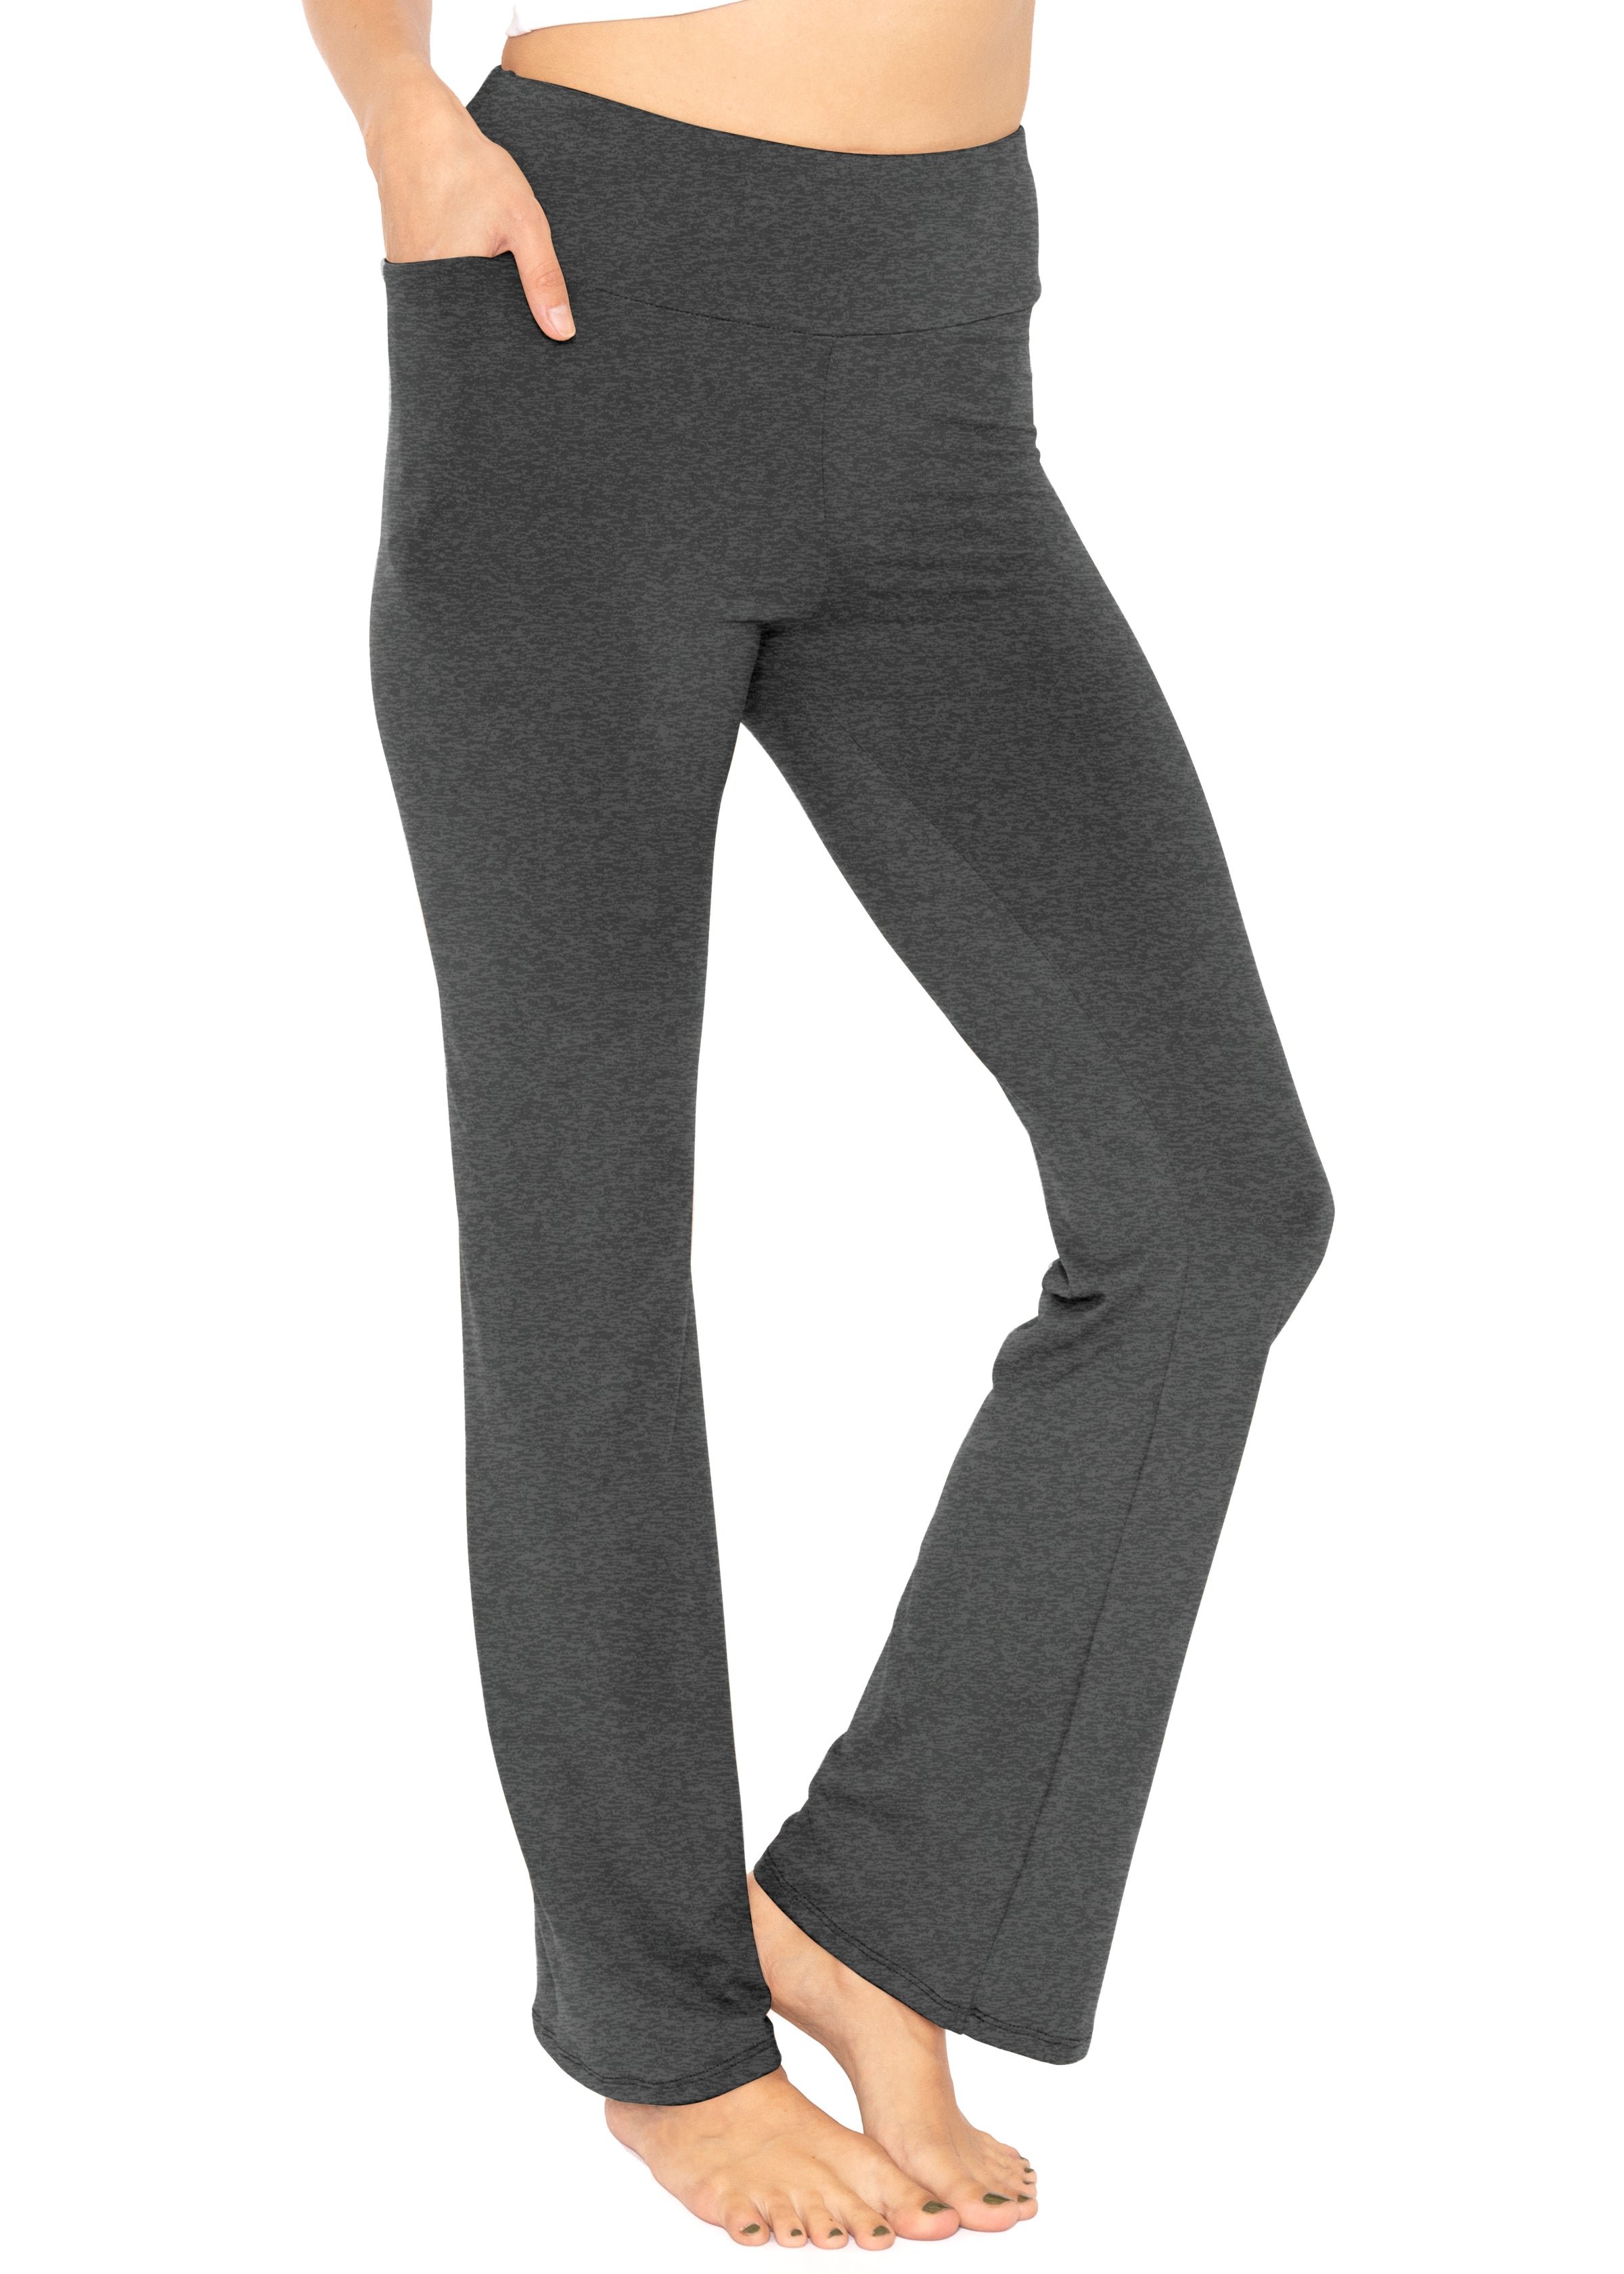 LDsports Bootcut Yoga Pants with Hidden Pockets High Waist Workout